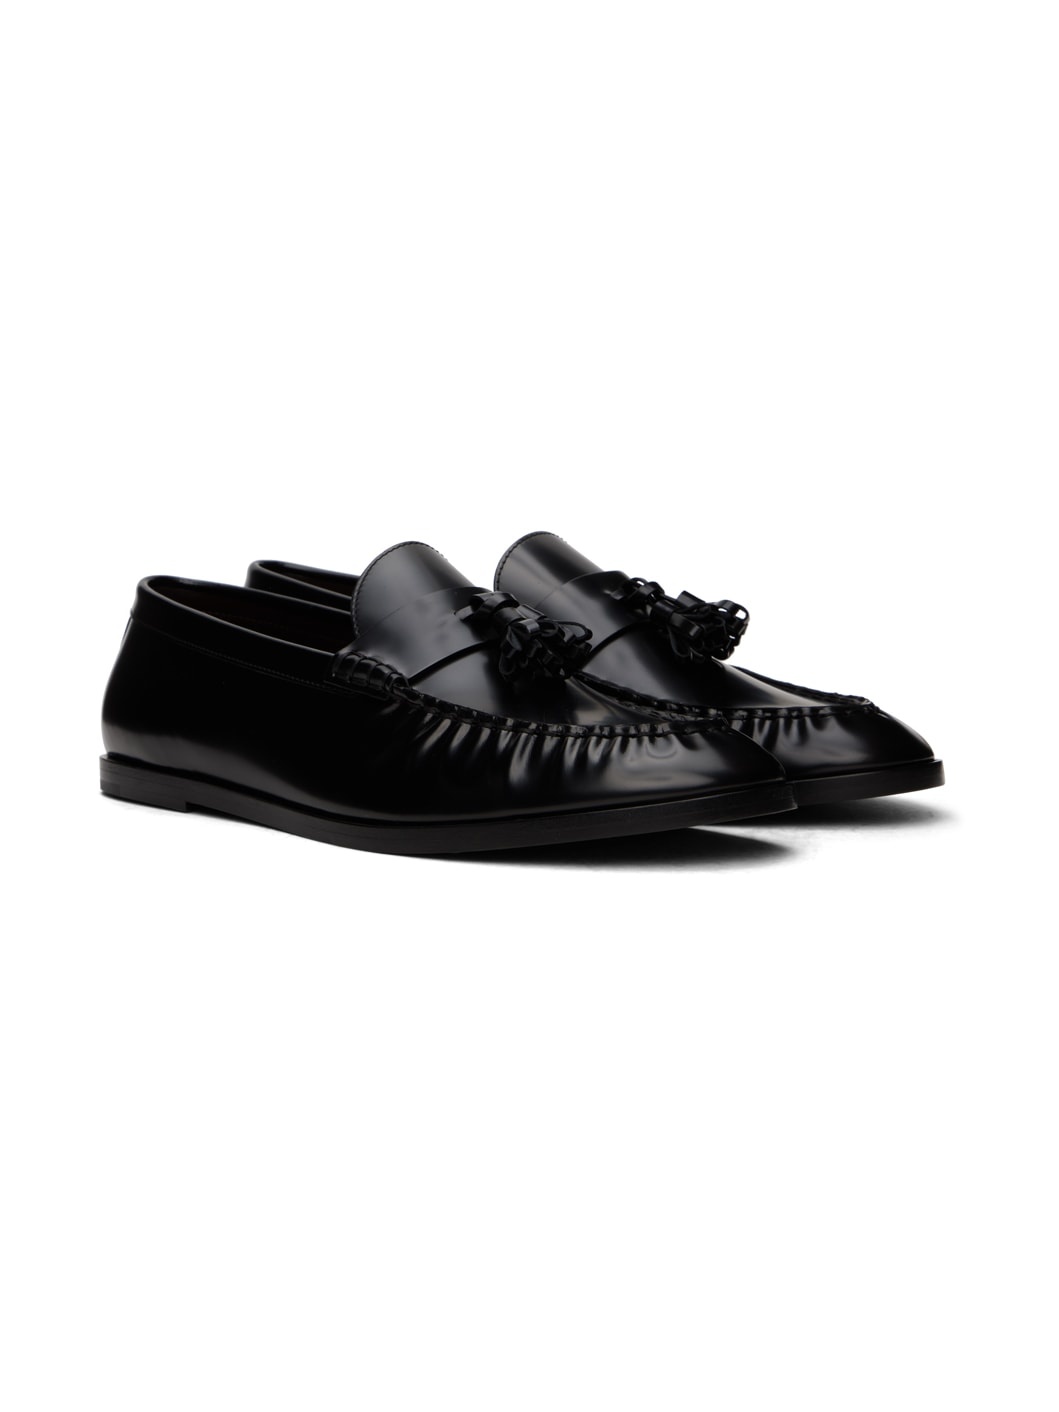 Black Tassle Loafers - 4